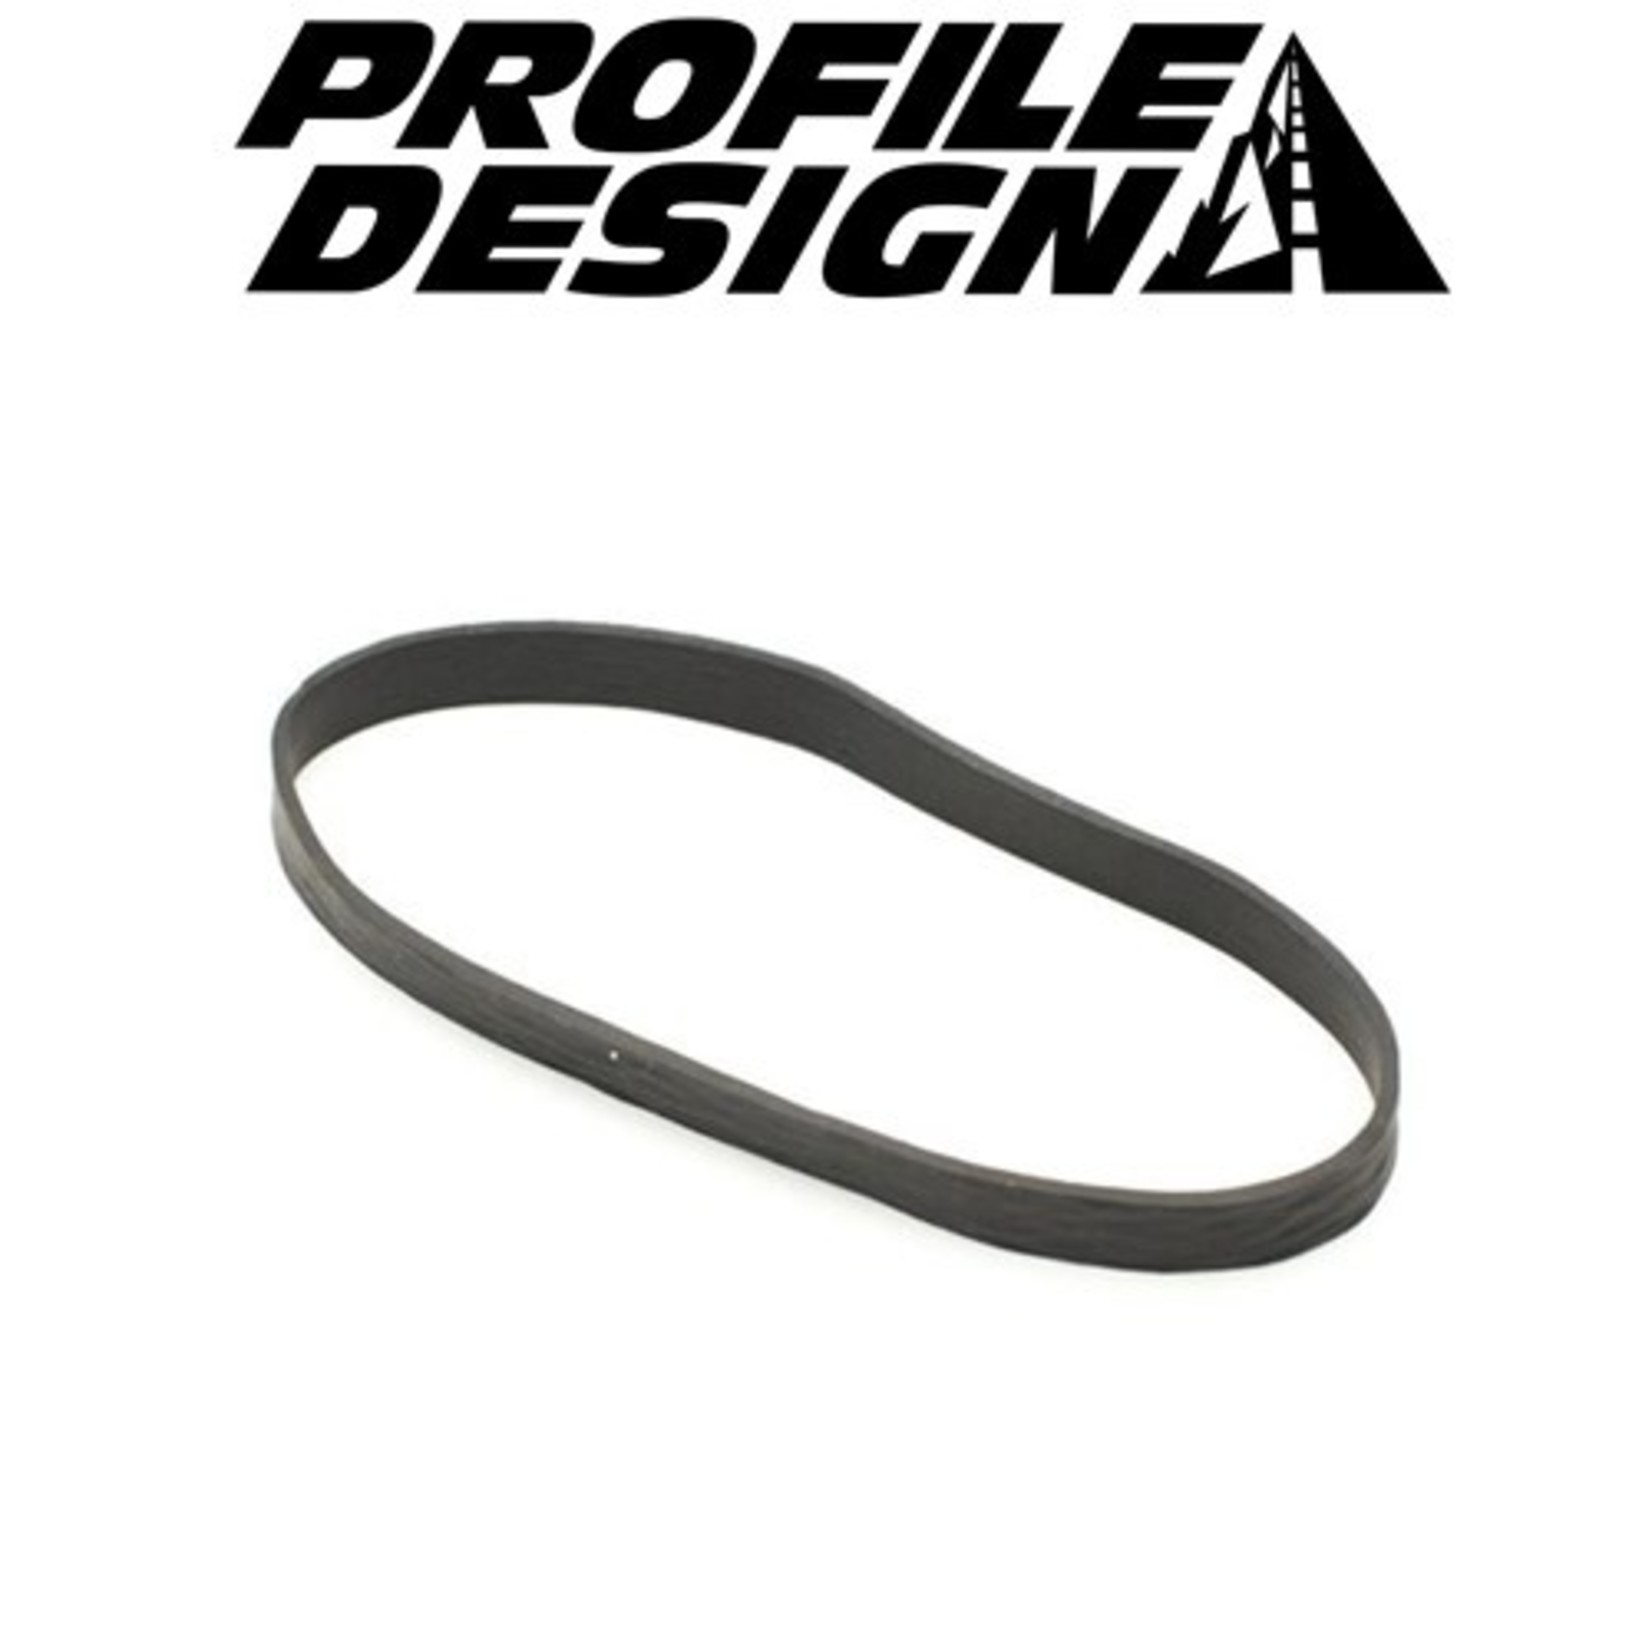 Profile Profile Design FC Rubber Band